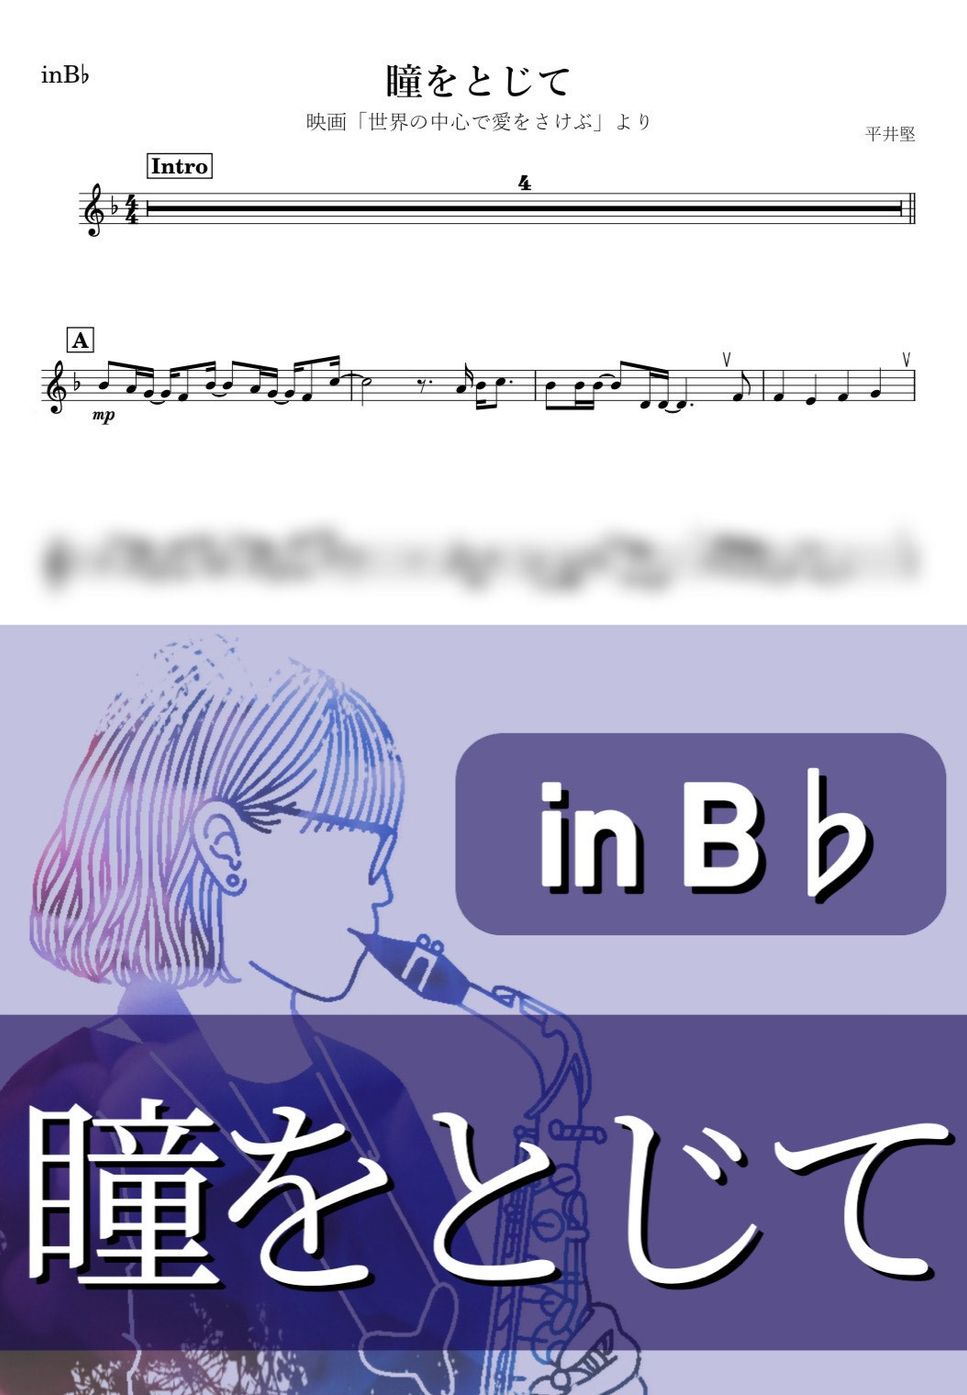 平井堅 - 瞳をとじて (B♭) by kanamusic